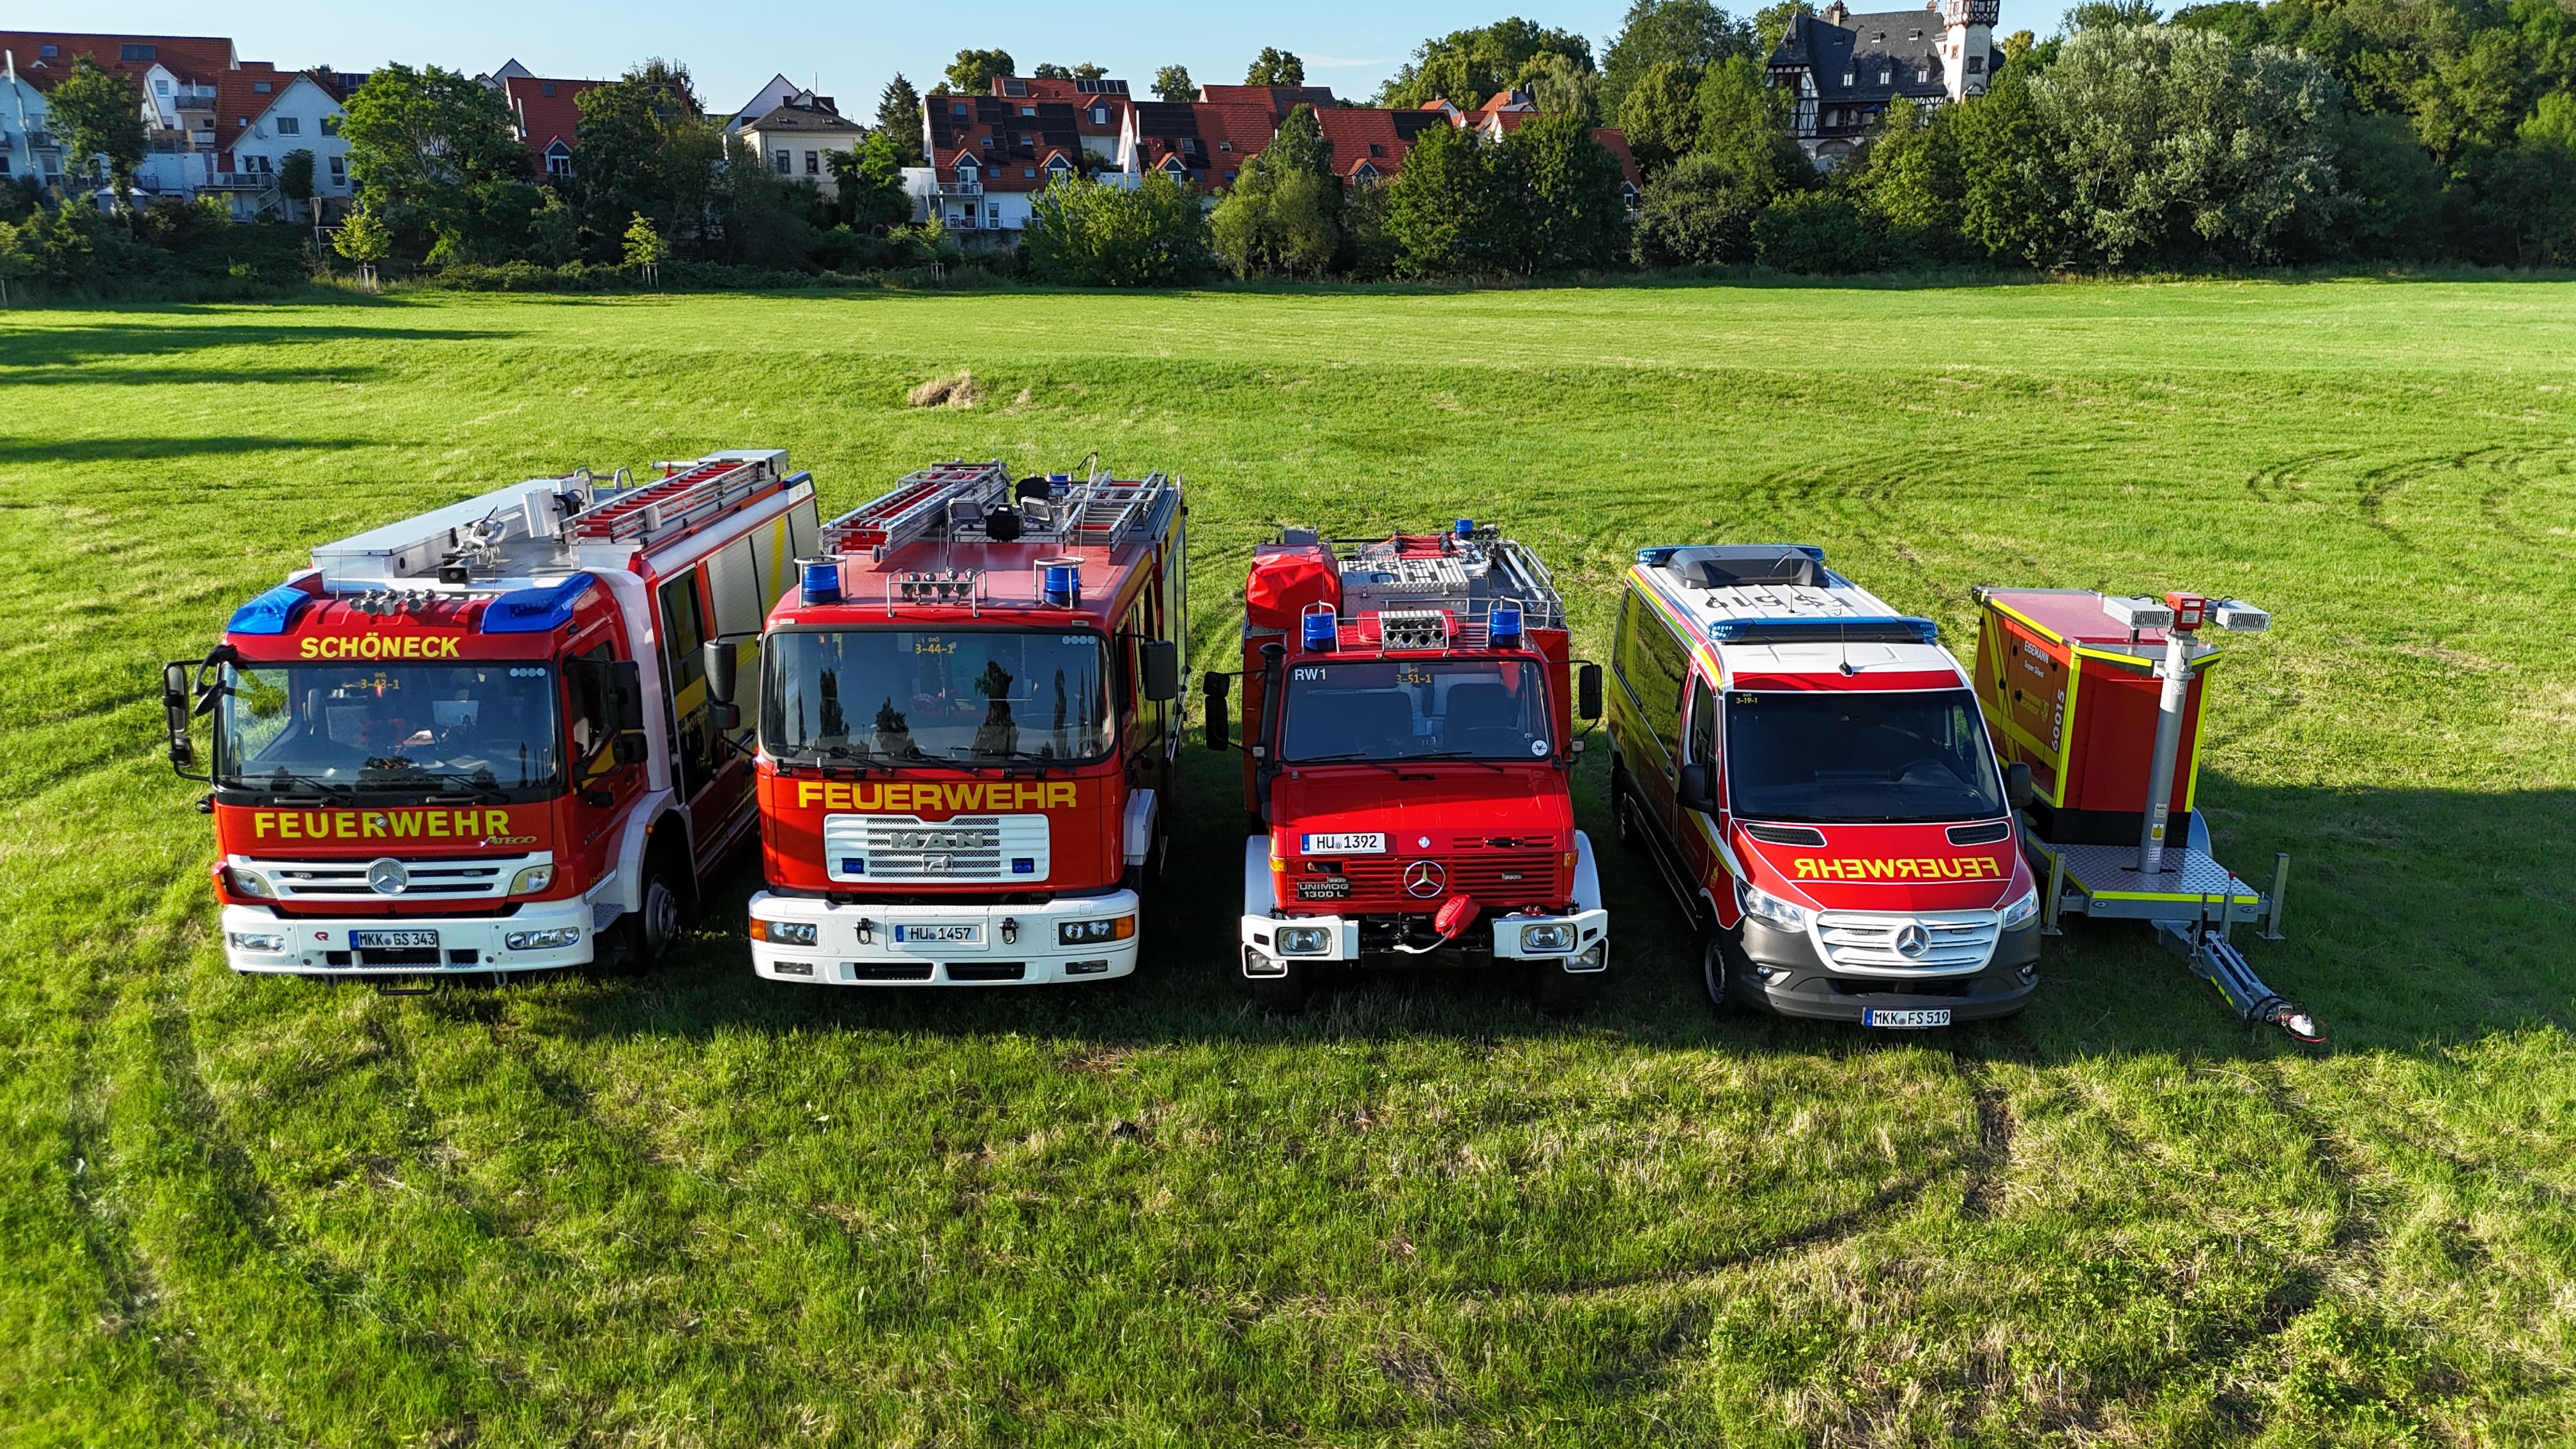 Herzlich Willkommen bei der Freiwilligen Feuerwehr Schöneck106